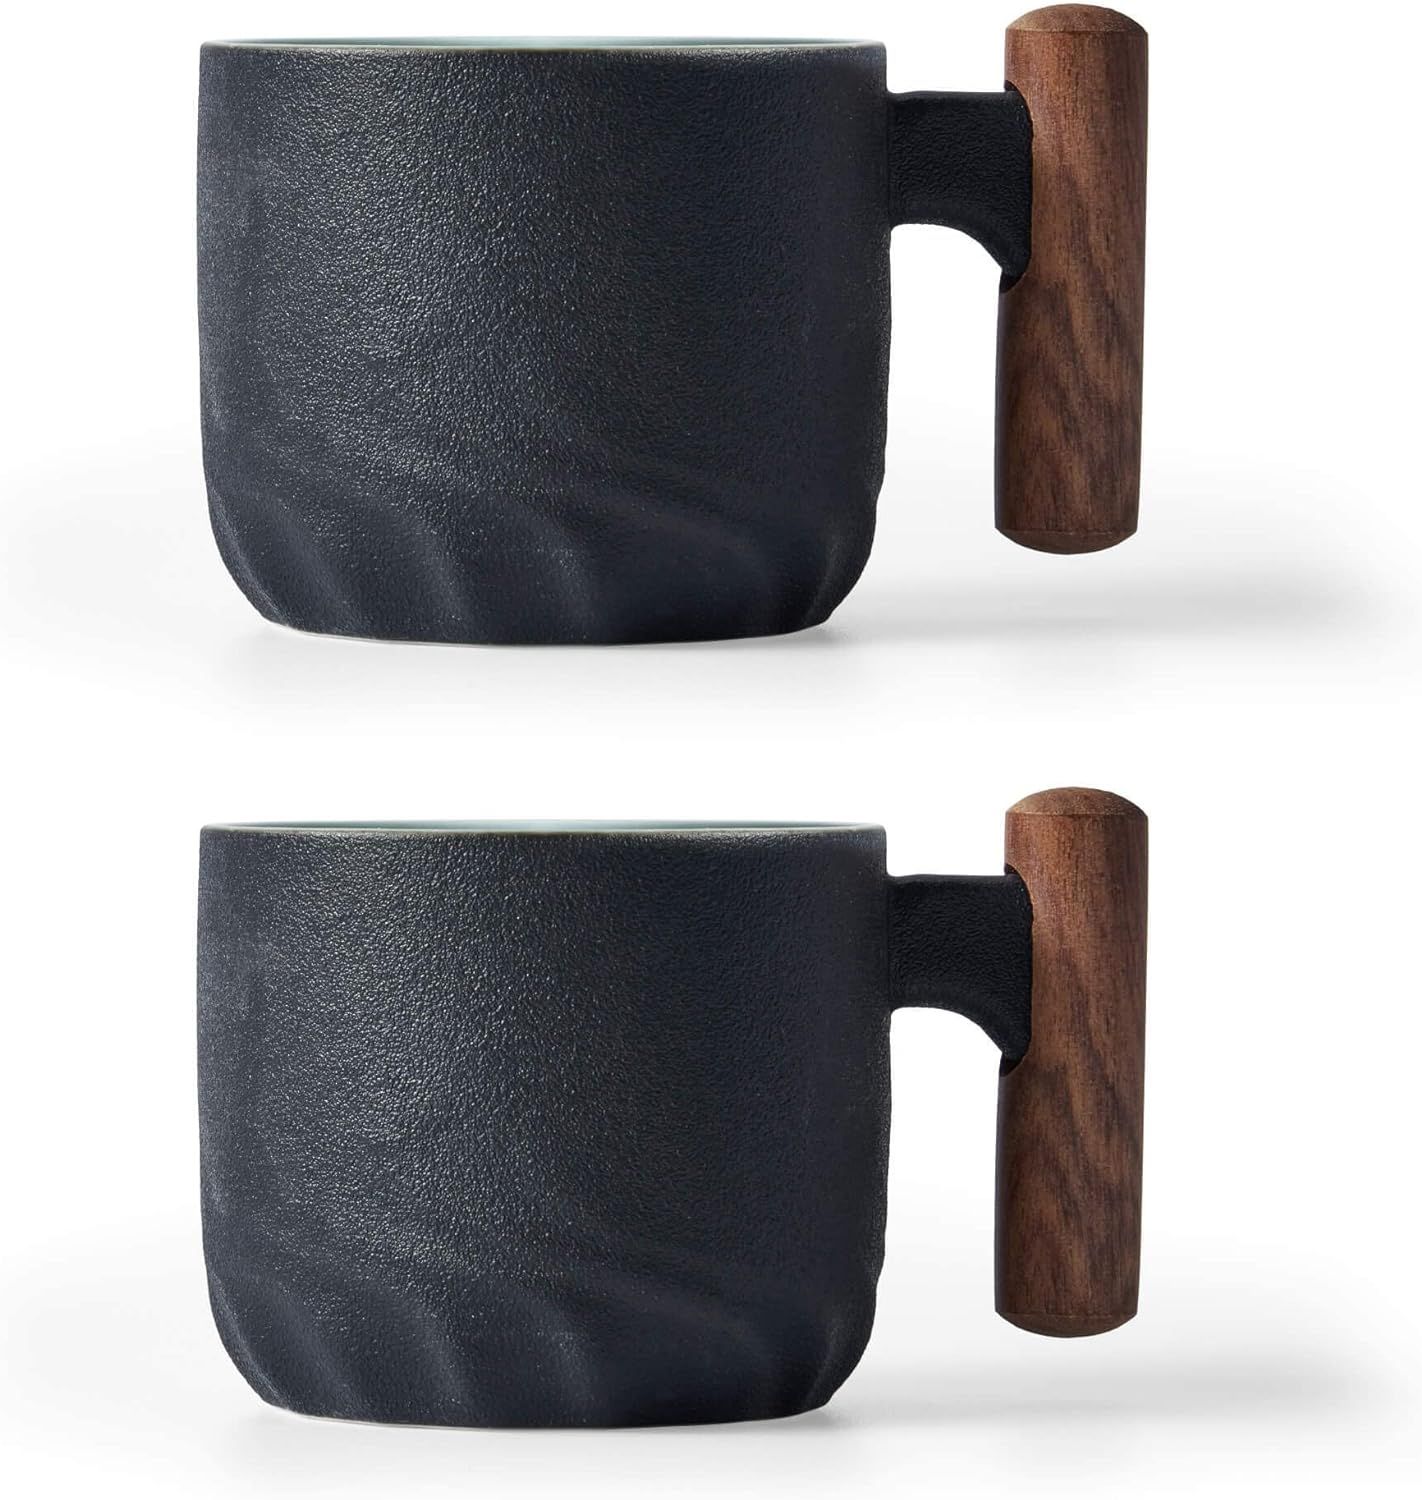 Ceramic Espresso Cups with Wooden Handle Espresso Shot Cups Ceramic Tea Cups Porcelain Demitasse ... | Amazon (US)